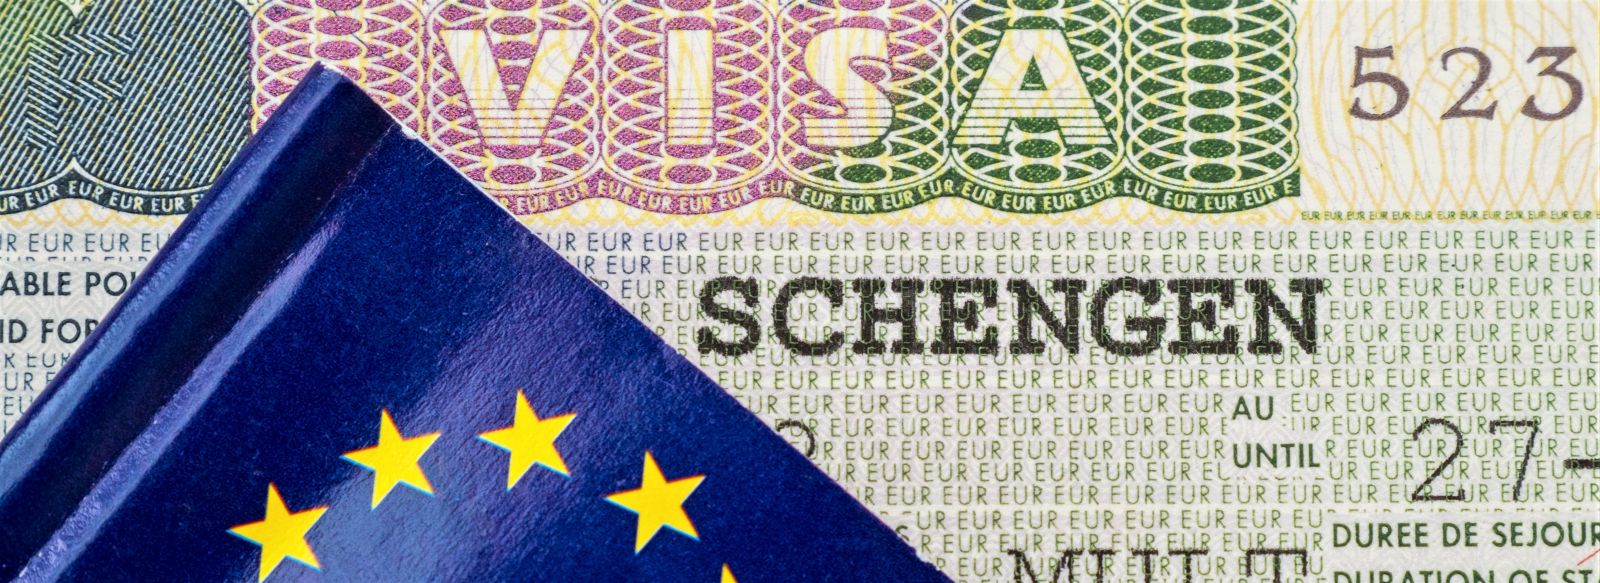 Schengen zone - passport page.